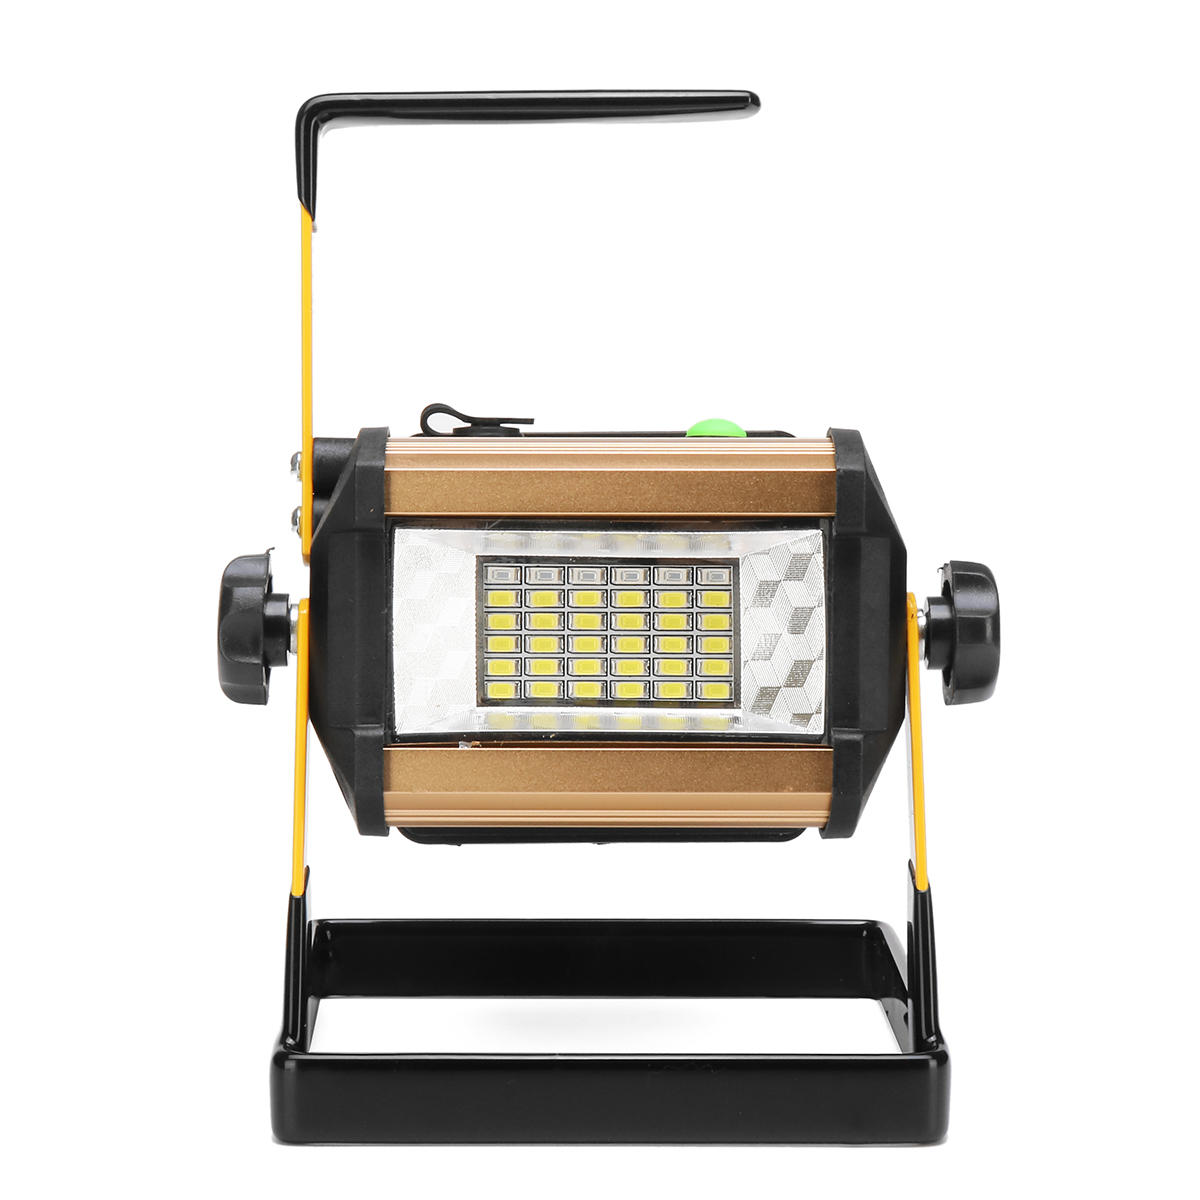 50 watt 24 LED arbeitslicht scheinwerfer ip65 wasserdicht 3 modi flutlampe outdoor camping notfall laterne